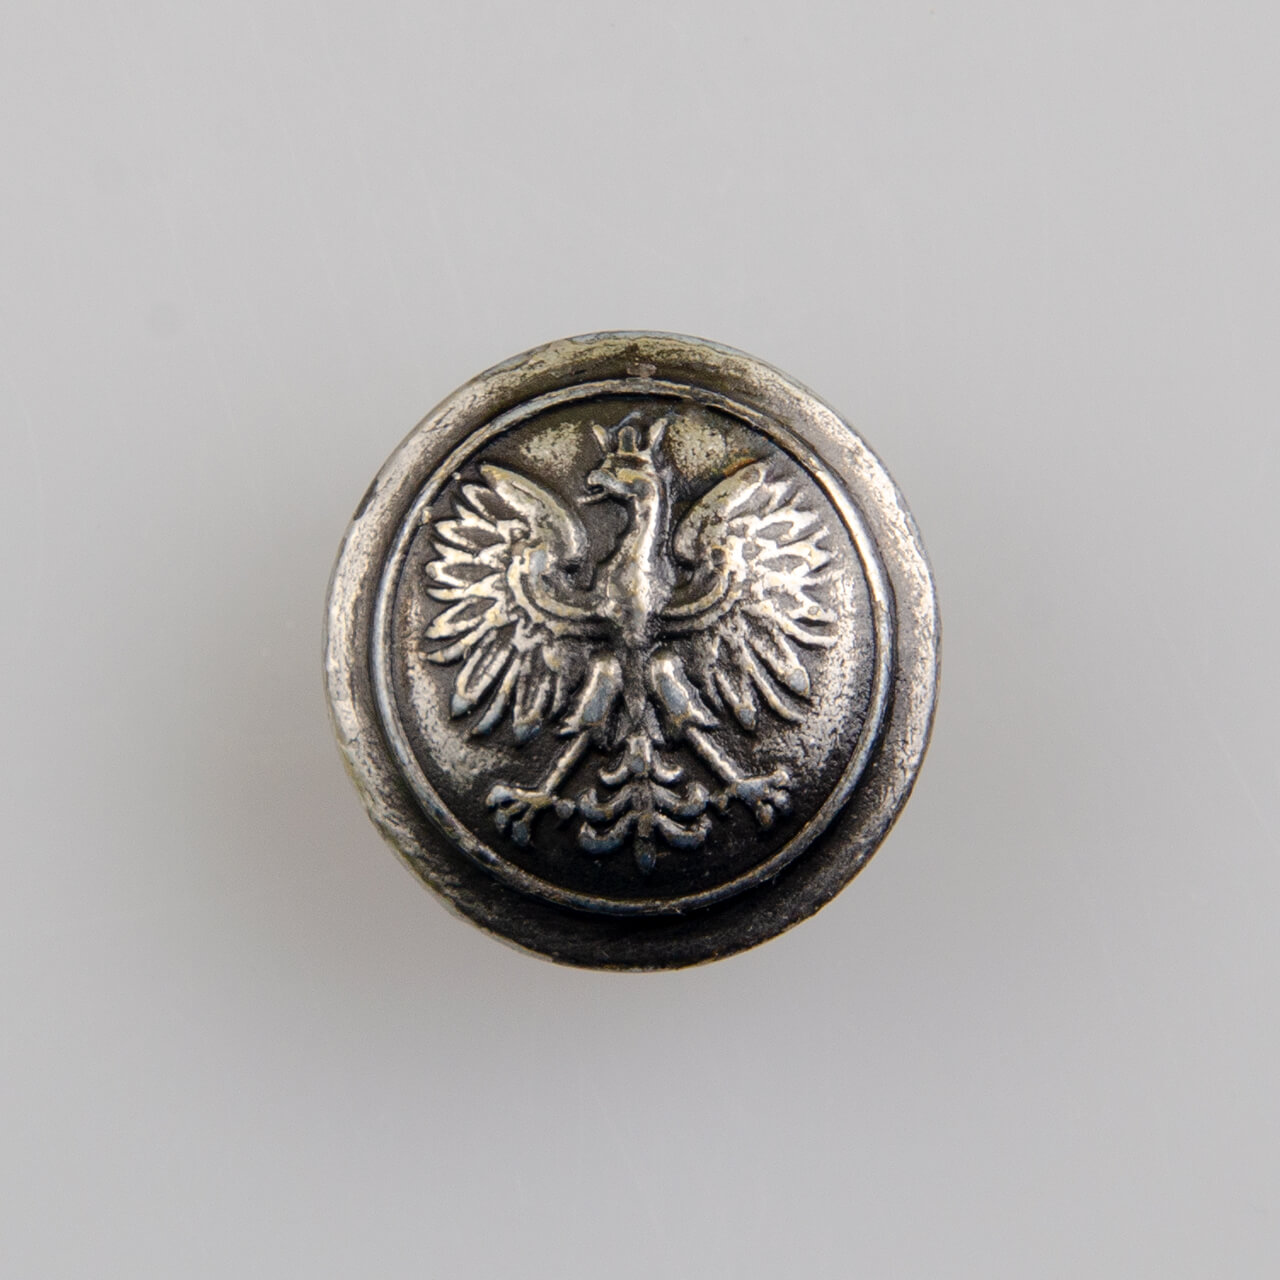 Policyjny guzik z orłem kolor srebrny przecierany, śr. 16 mm (Oficjalny wzór)